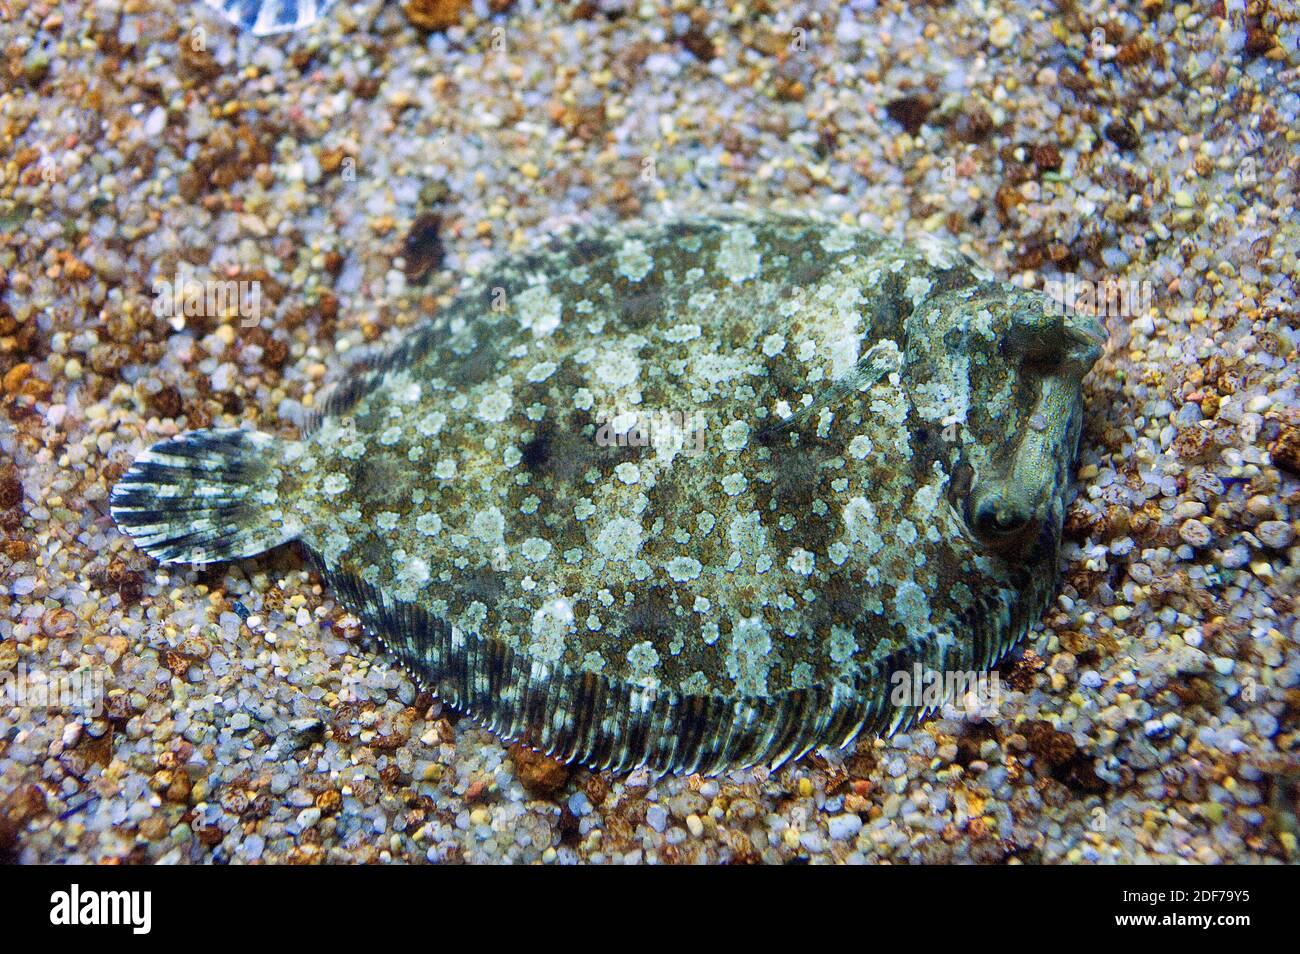 La platija de ojos anchos (Bothus podas) es un pez marino béntico nativo  del Mar Mediterráneo y de la costa atlántica de África Fotografía de stock  - Alamy